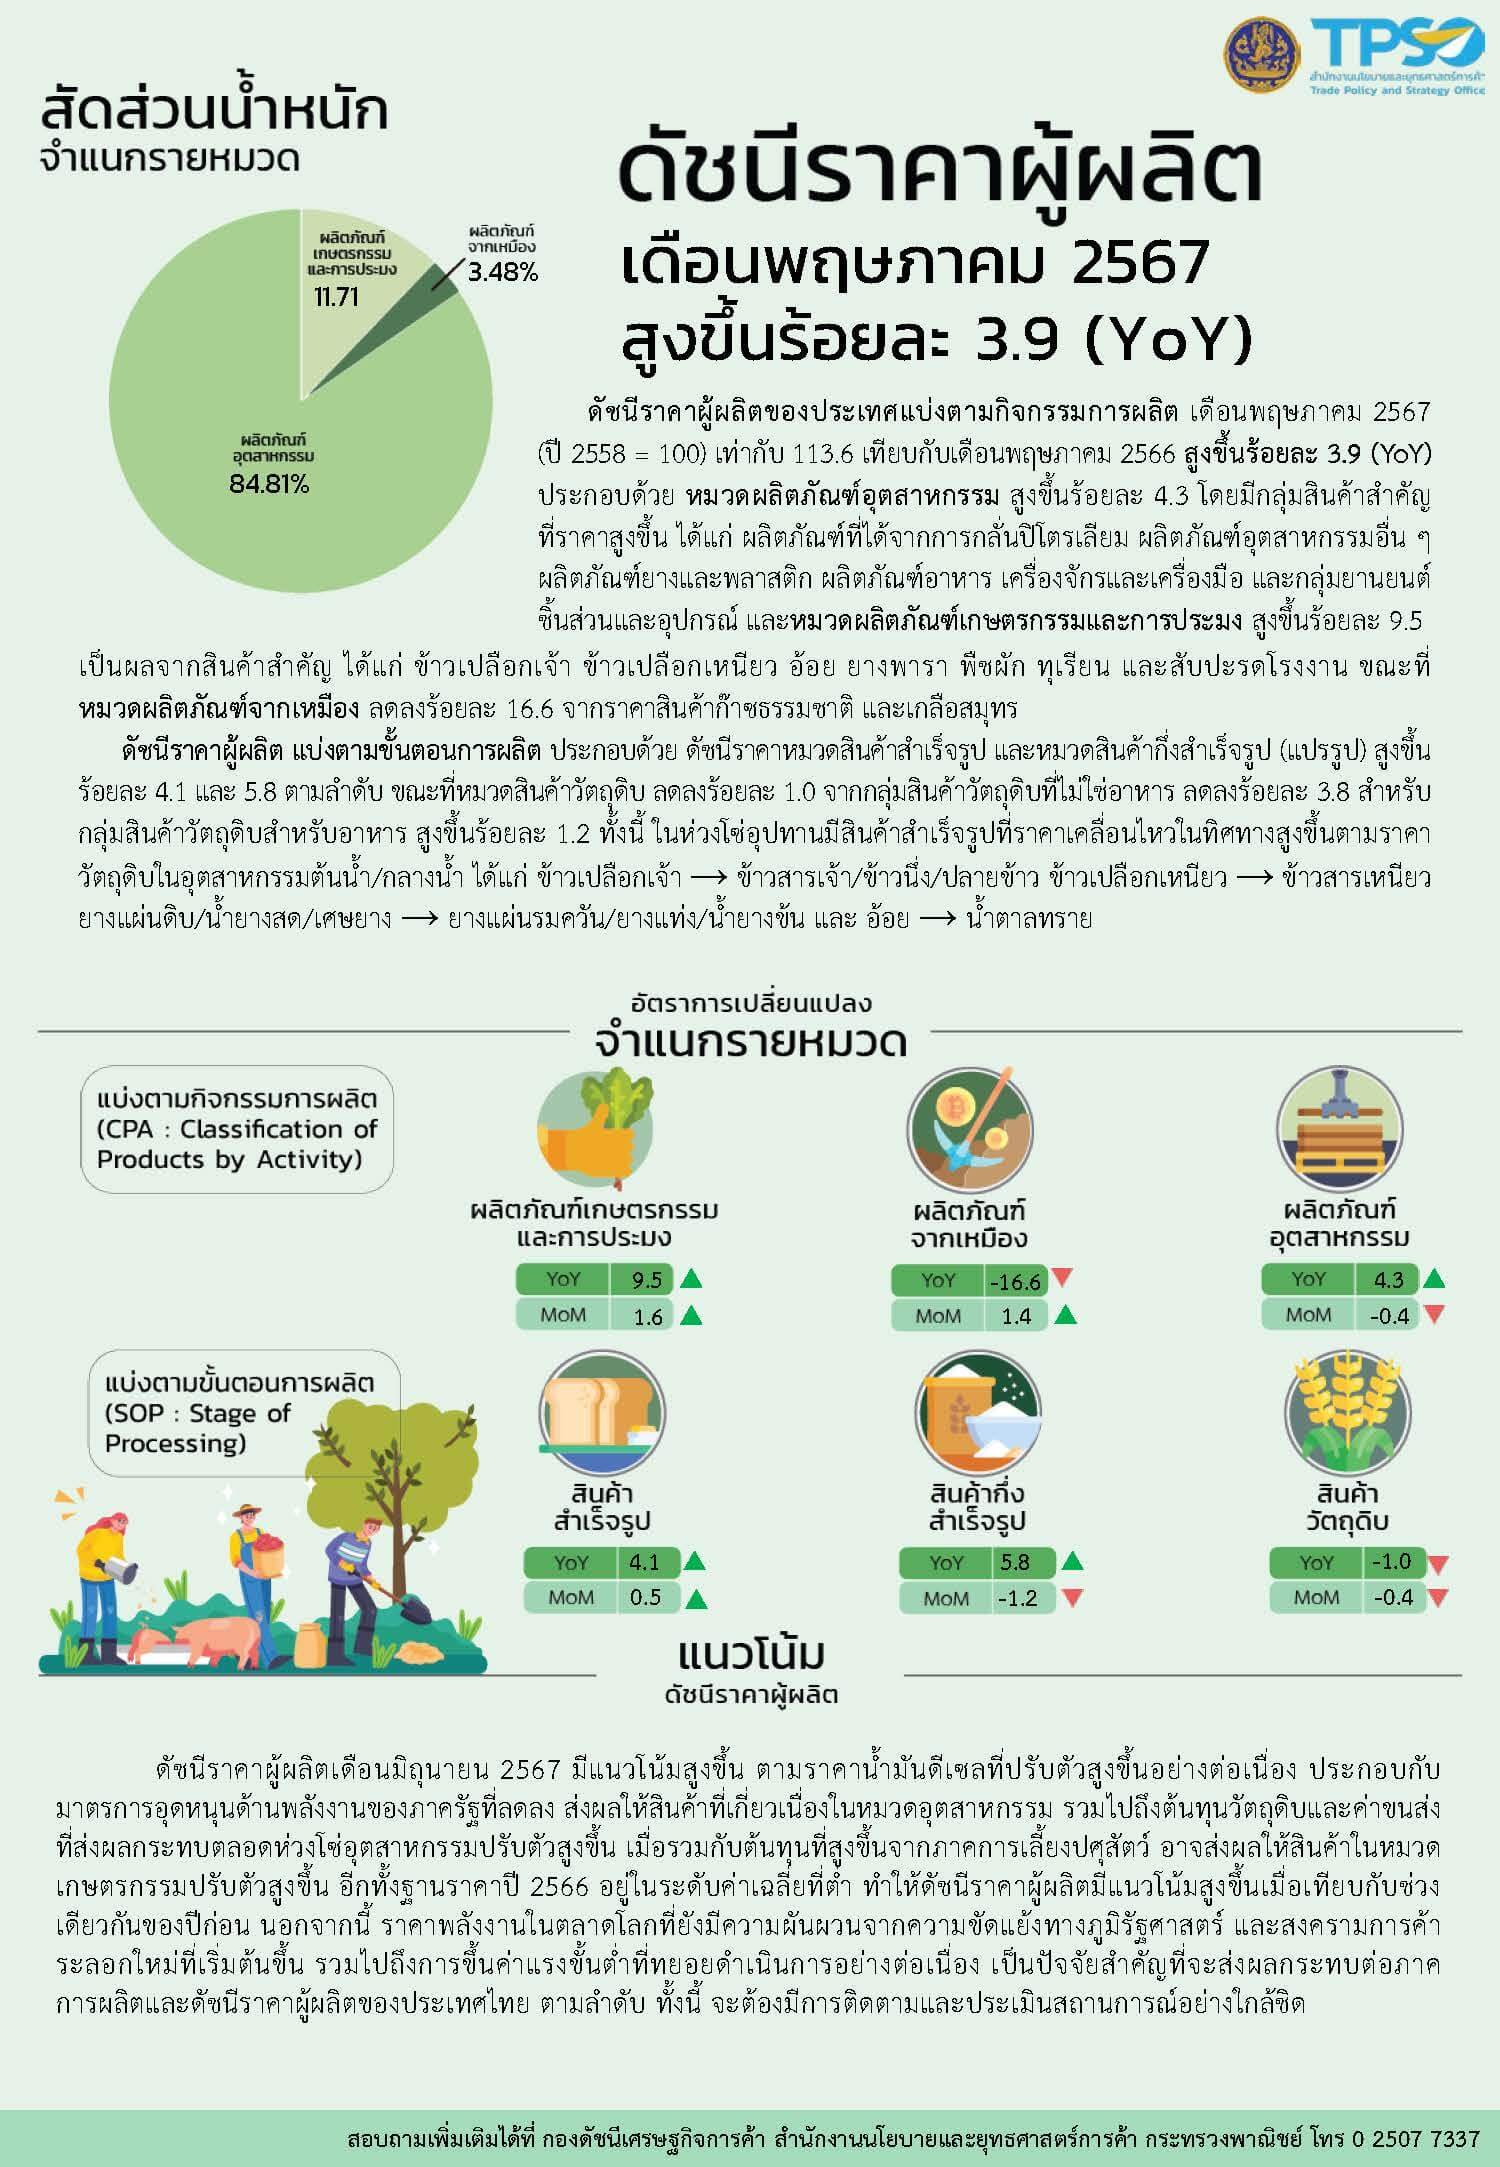 เศรษฐกิจไทยเดือนพฤษภาคม 2567 เงินเฟ้อทรงตัวต่ำ ความเชื่อมั่นผู้บริโภคฟื้นครั้งแรกในรอบ 6 เดือน